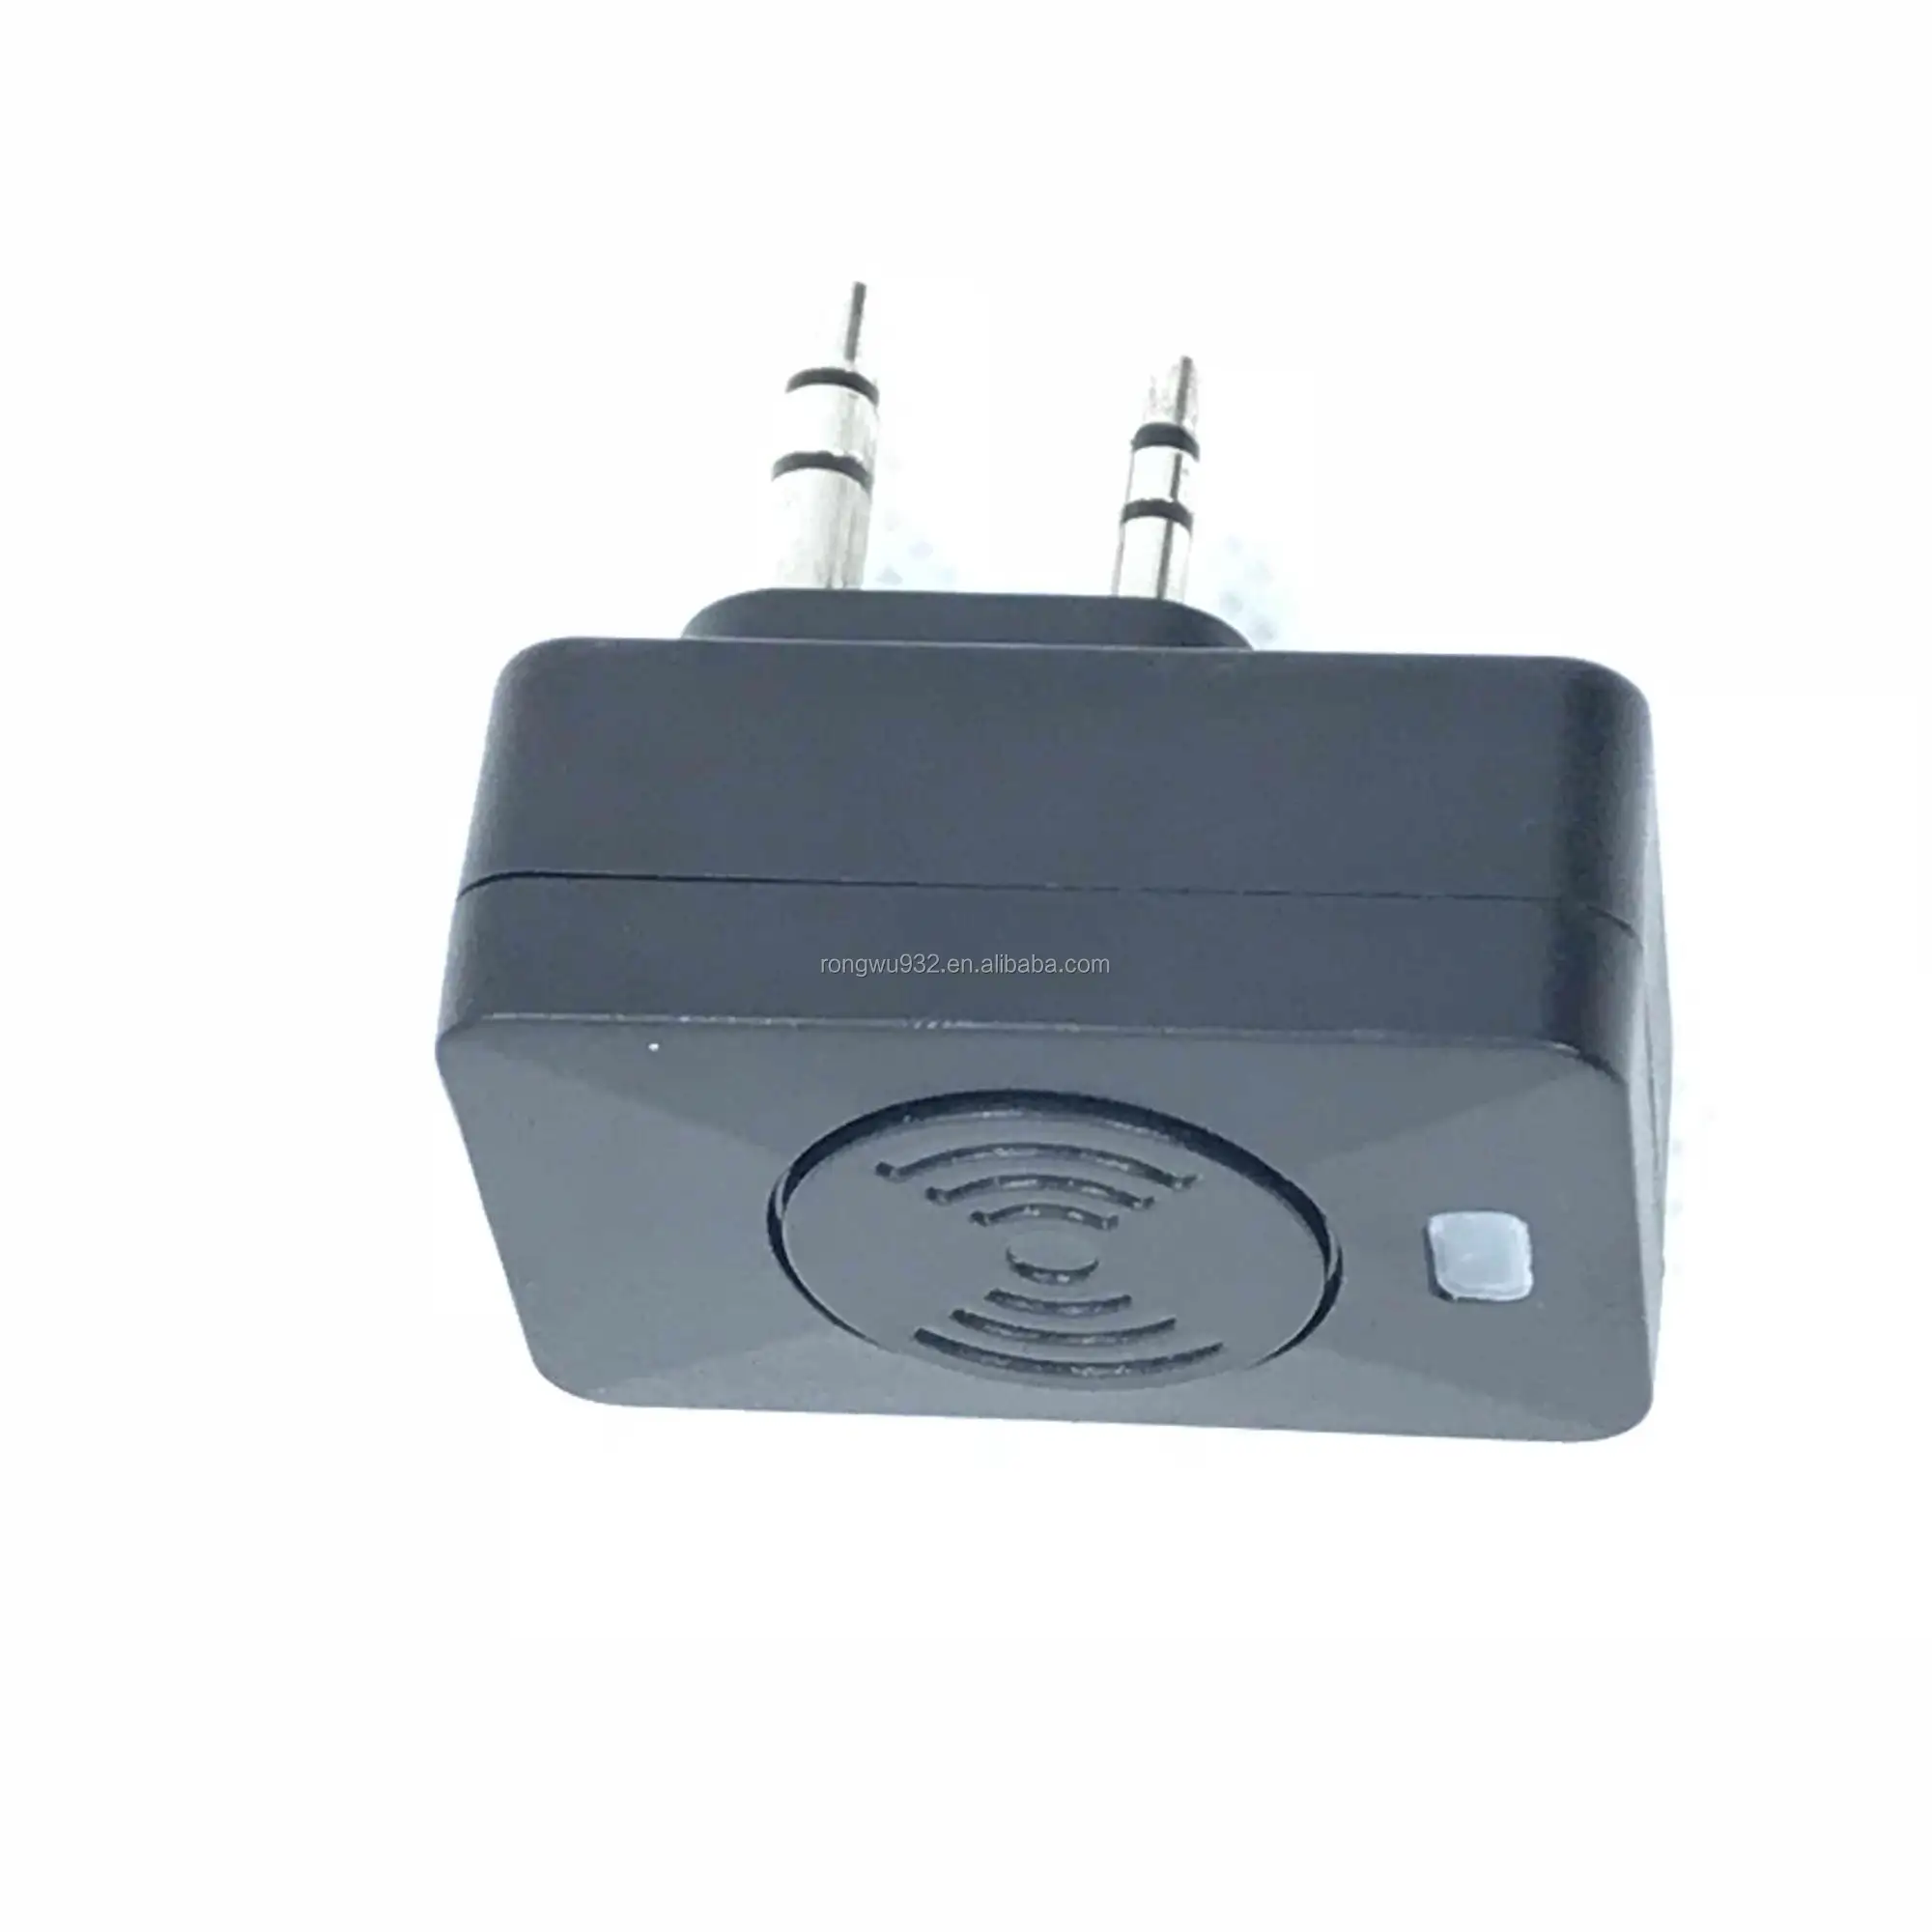 BT Headset Adaptor Kit Wireless Earpiece for Motorola Two Way radio Baofeng Walkie Talkie Kenwood Transceiver